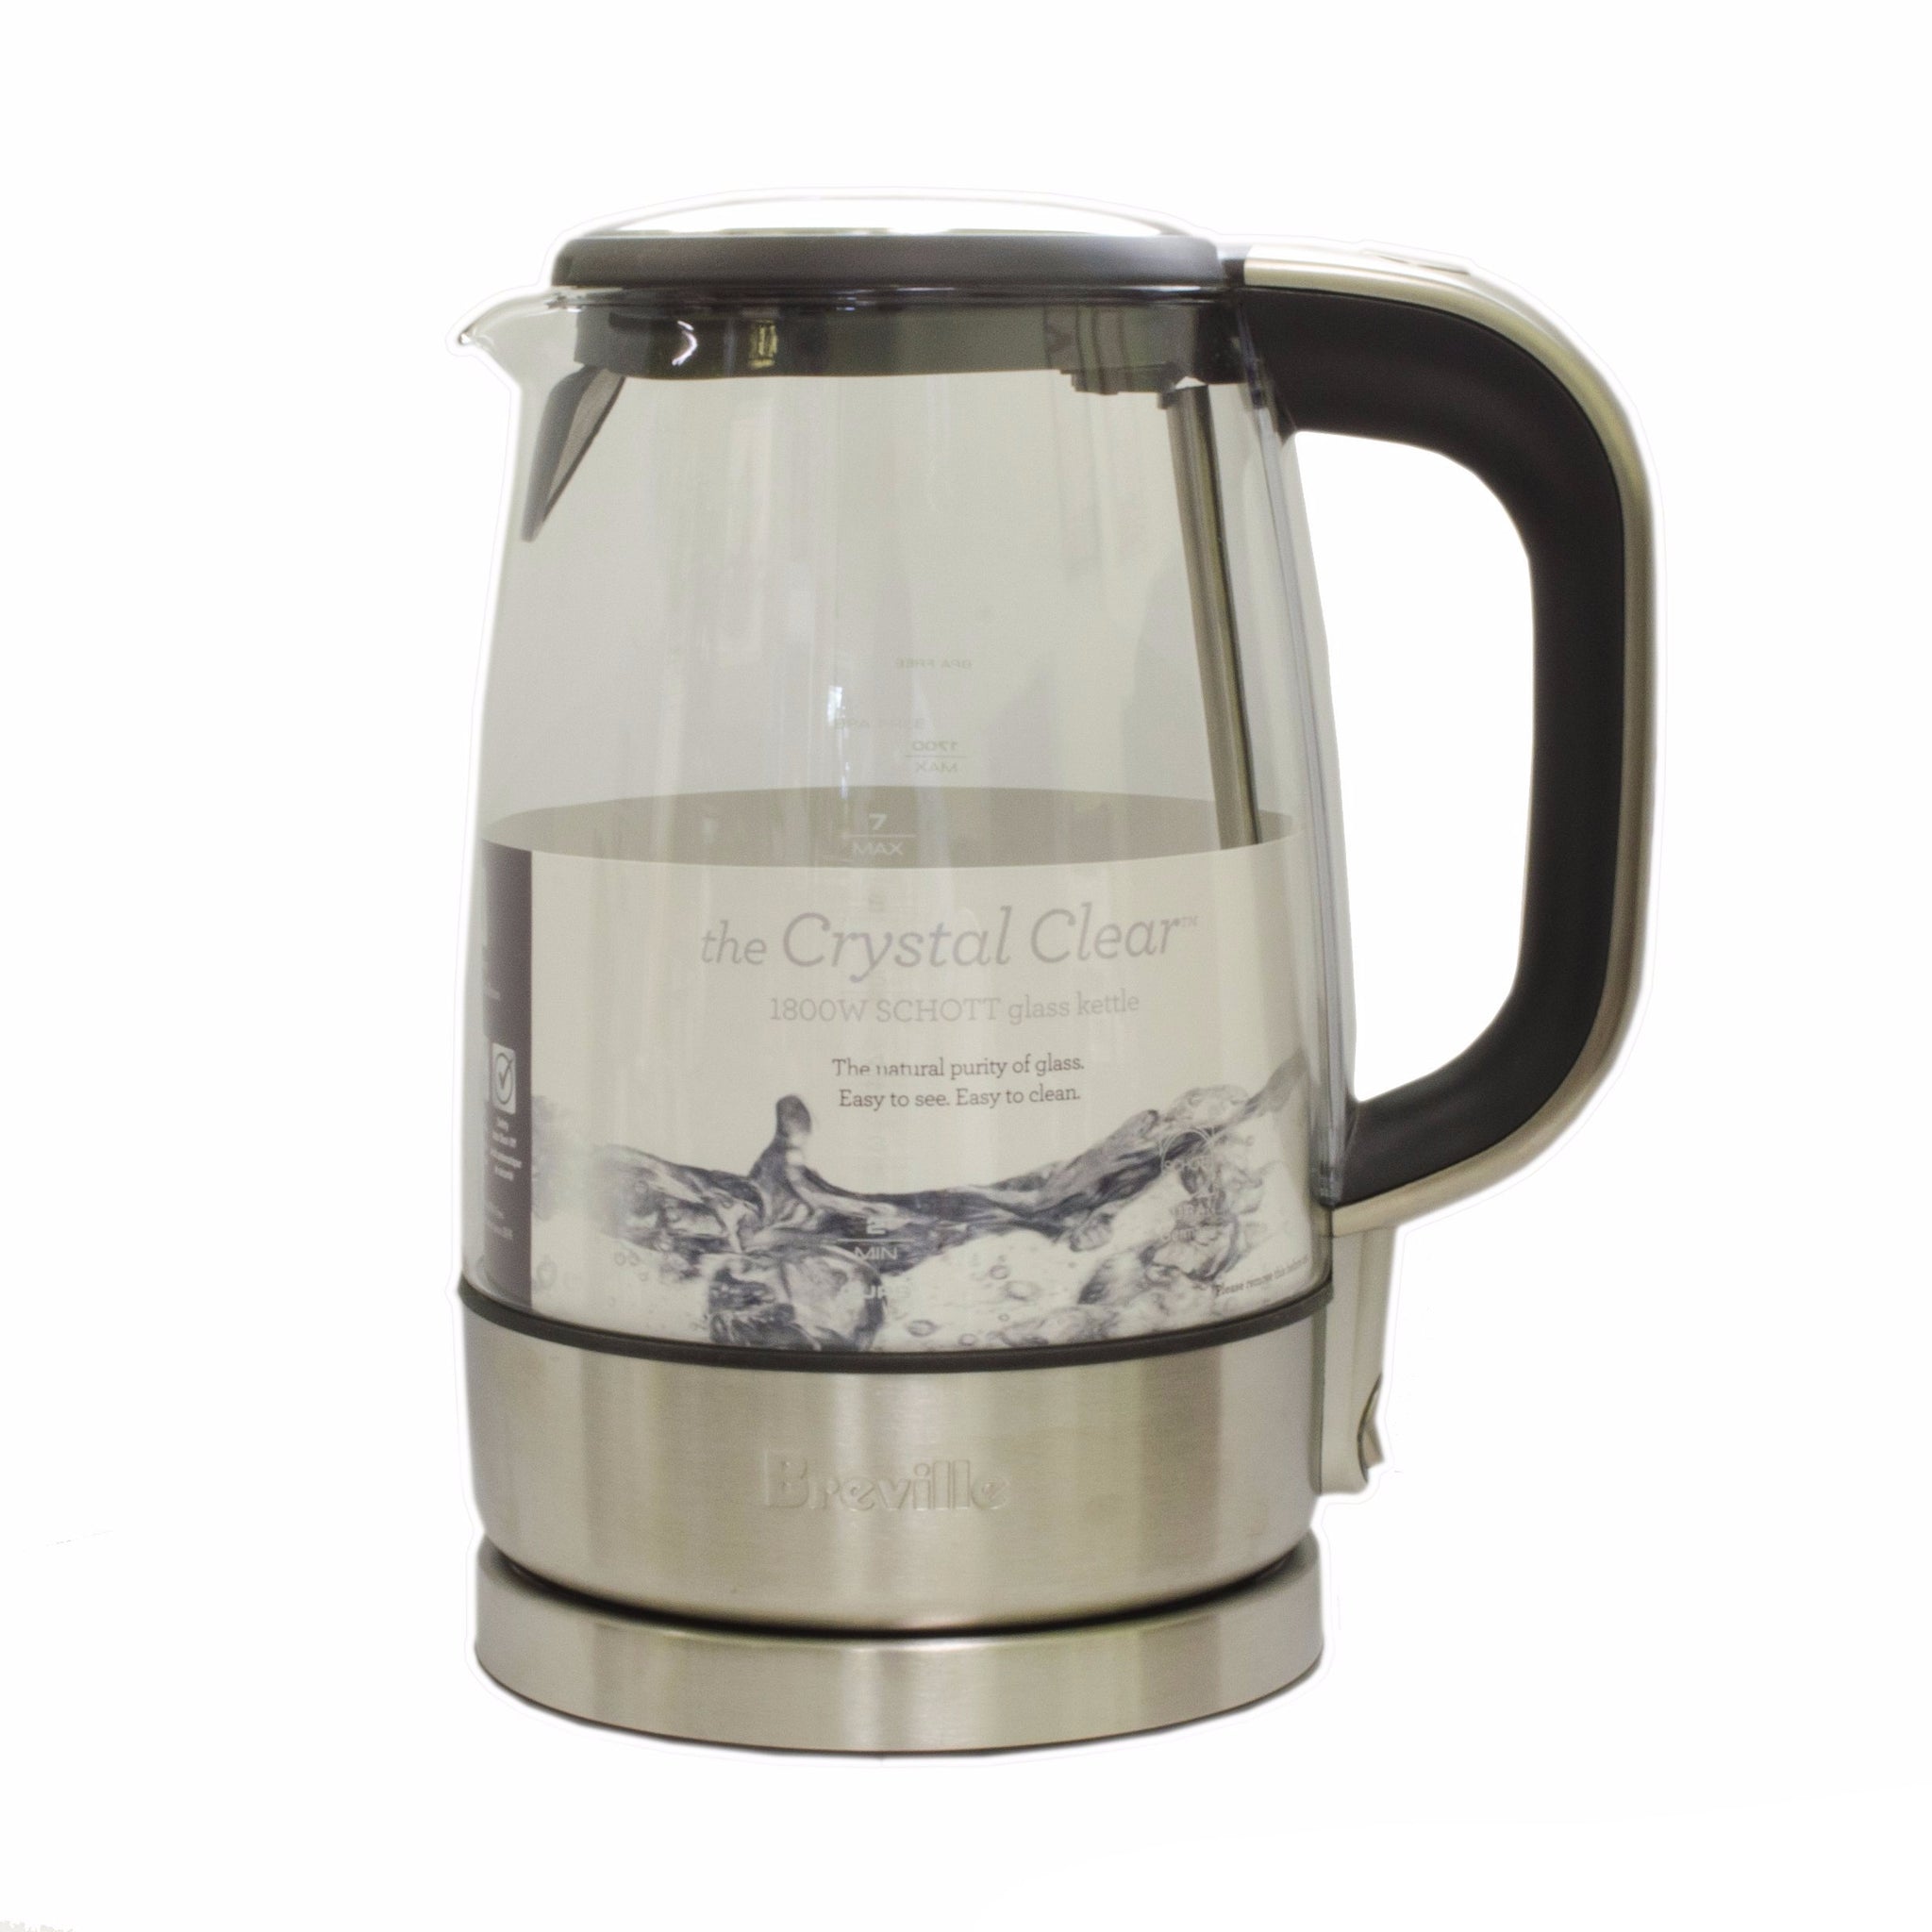 breville glass kettle